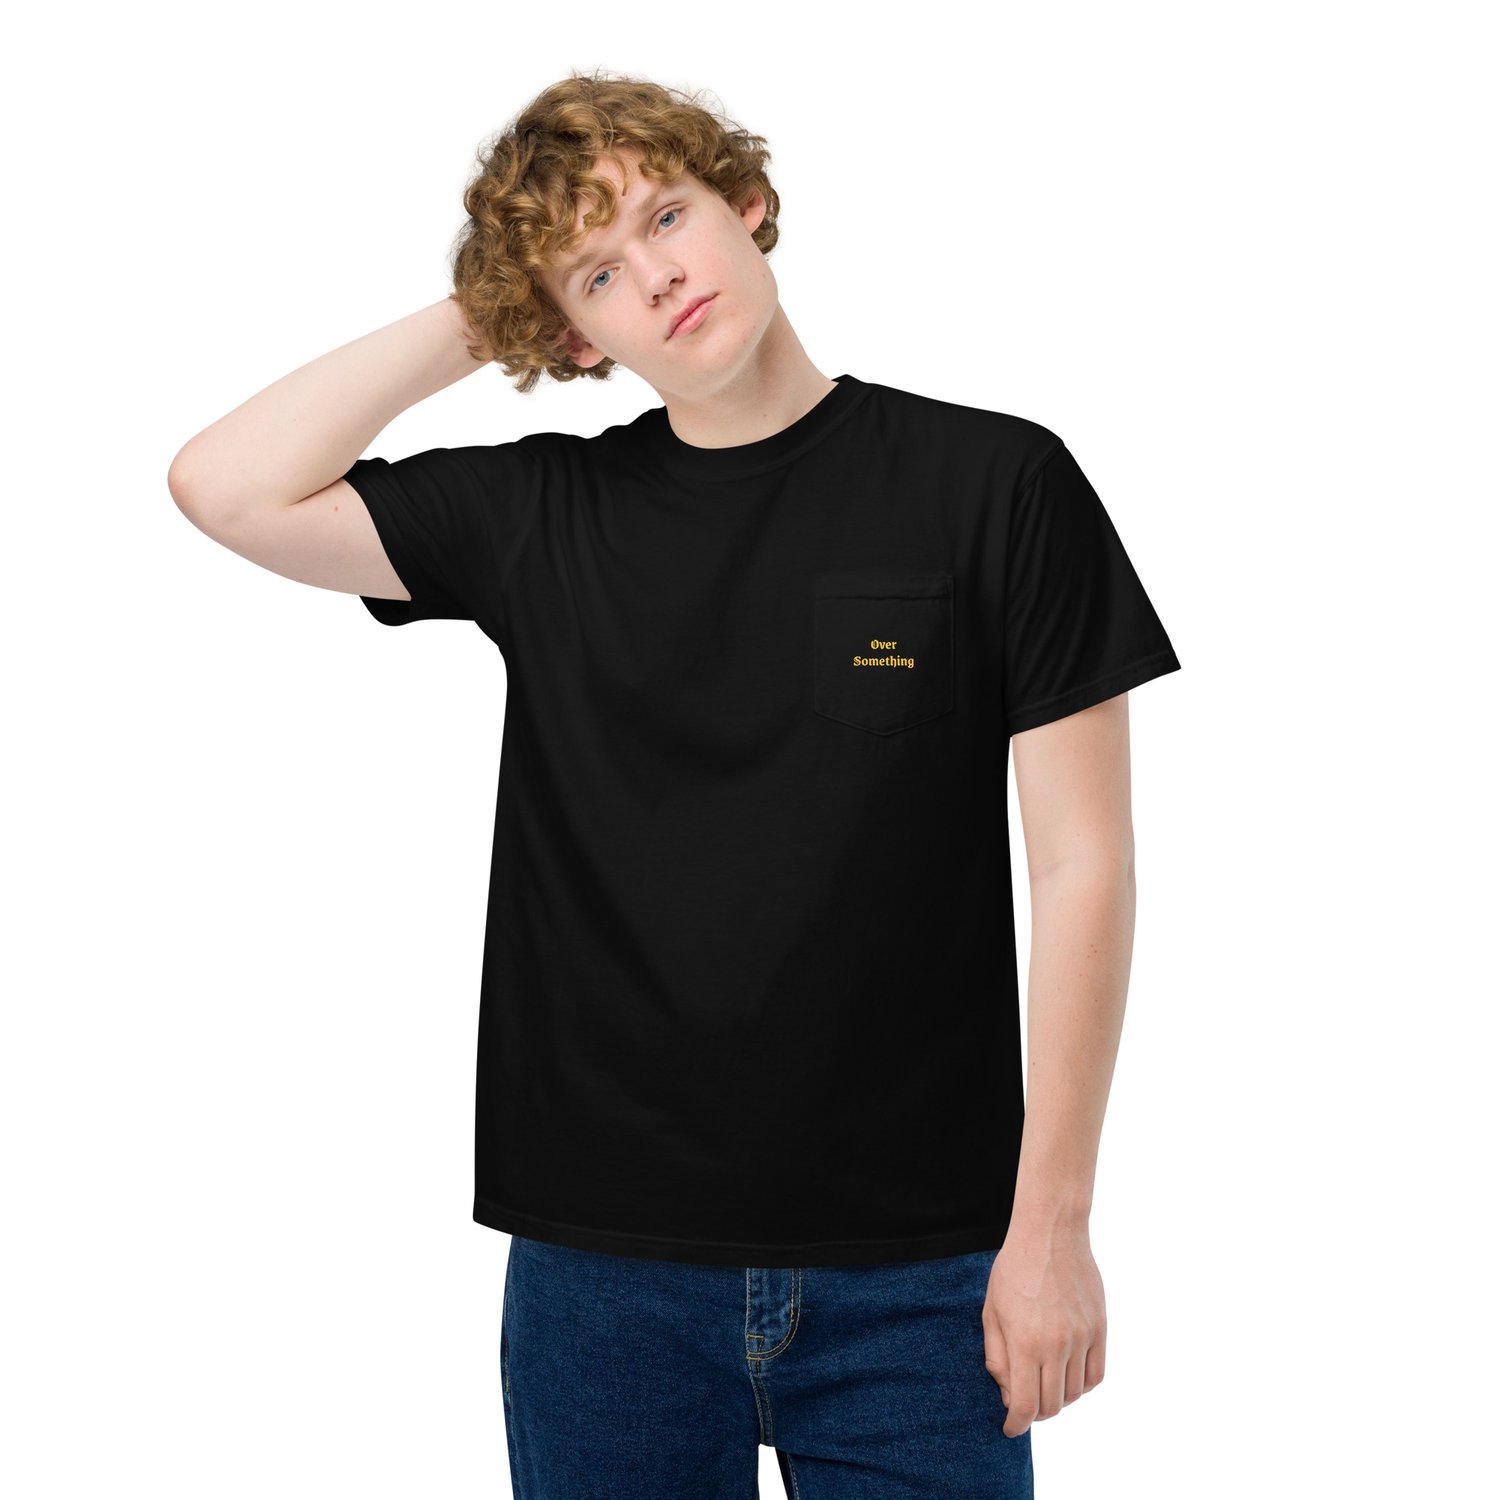 Image of "Over Something" Unisex garment-dyed pocket t-shirt